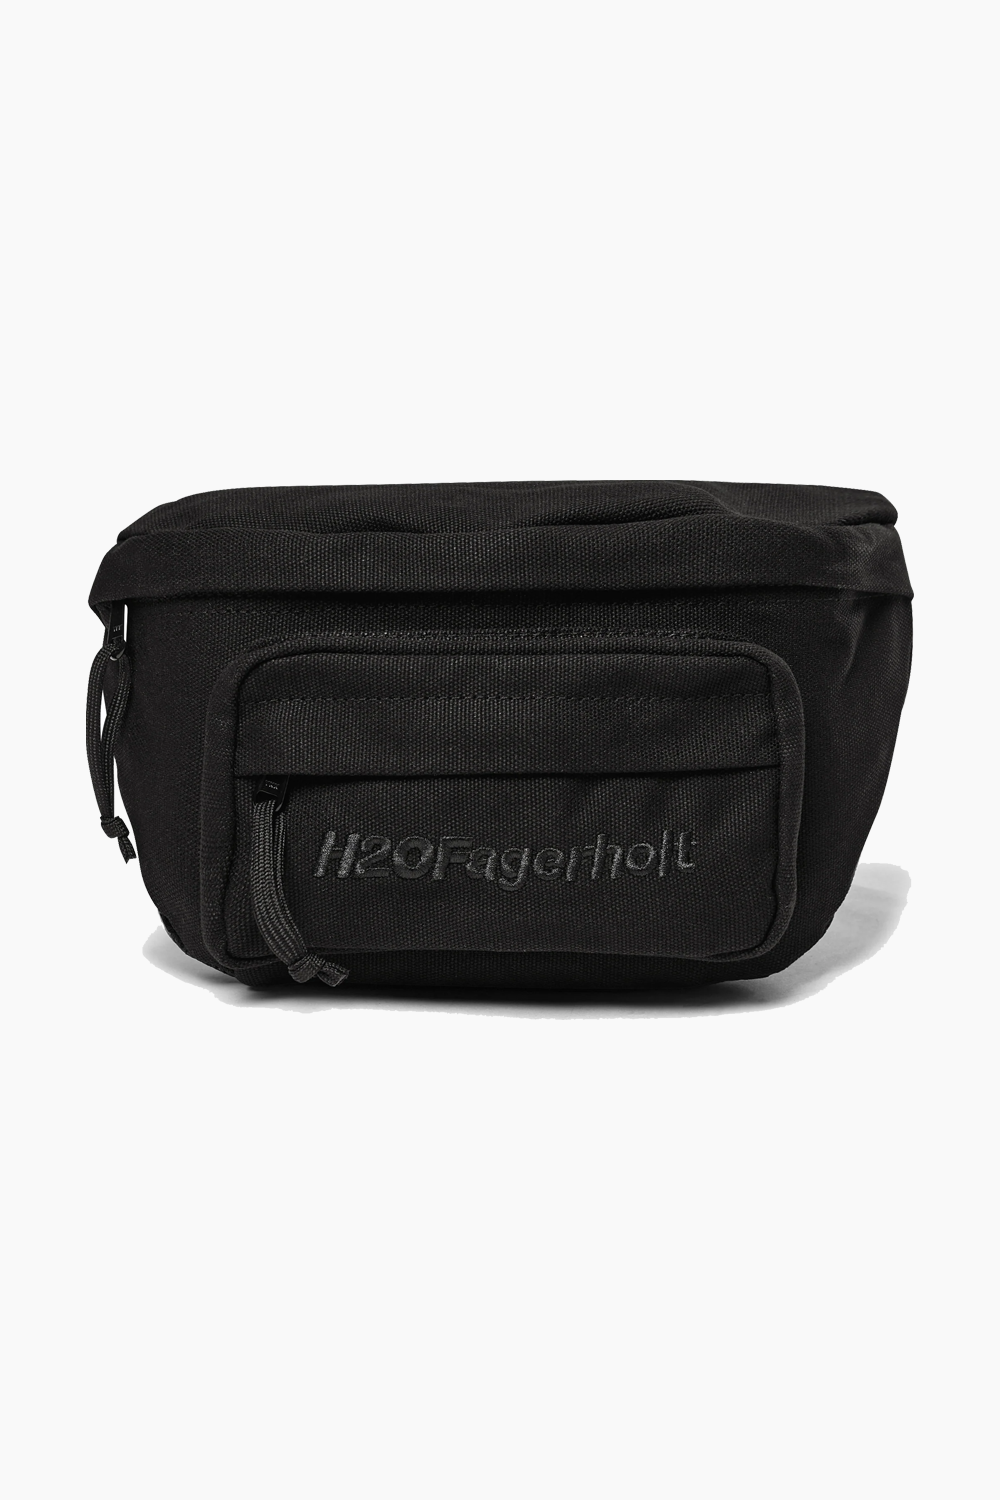 Se Lost Waist Bag - Black - H2O Fagerholt - Sort One Size hos QNTS.dk